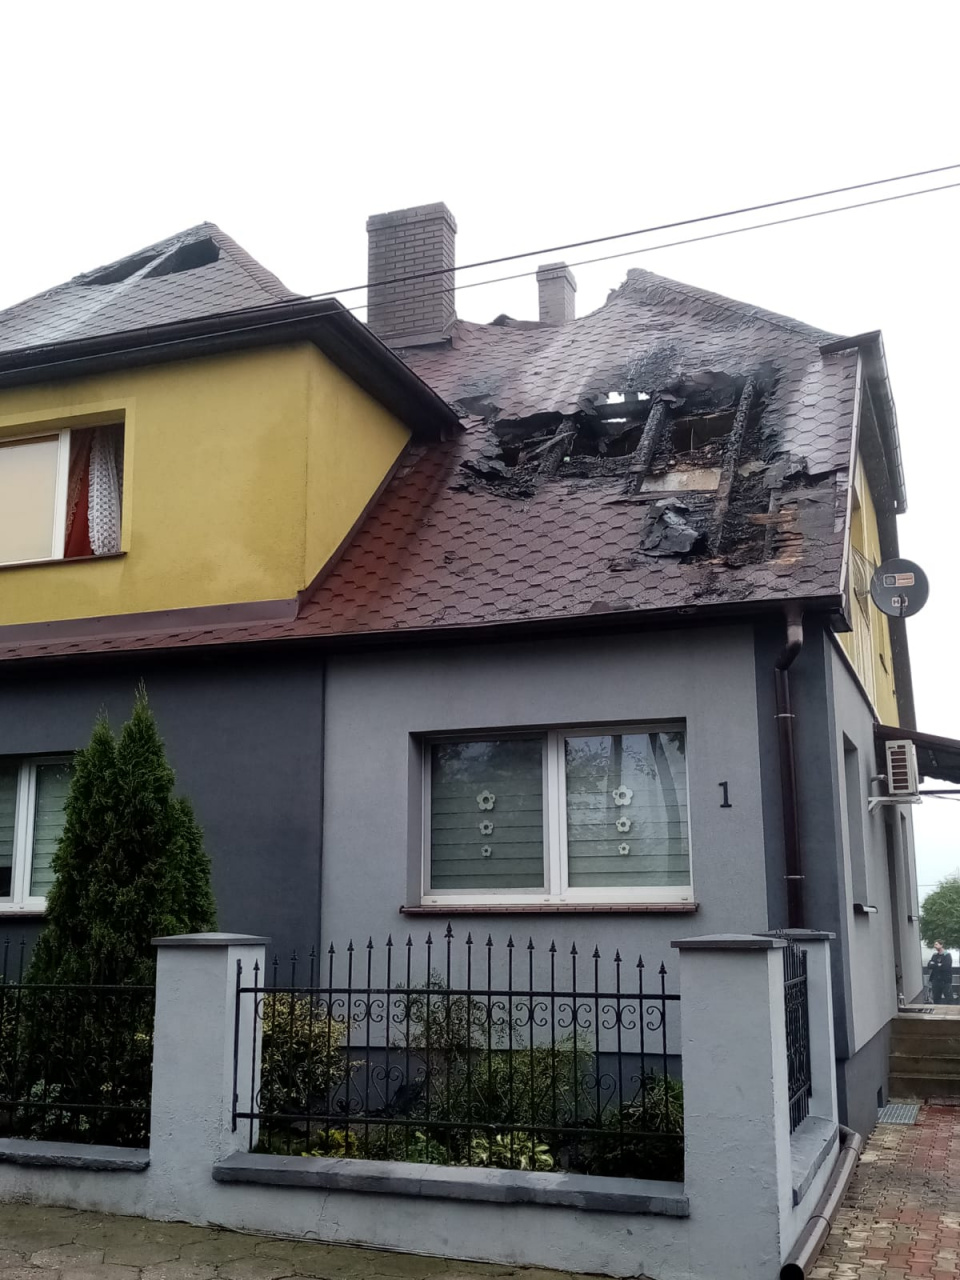 Piorun uderzył w dom w Krotoszynie w nocy z soboty na niedzielę. [fot. www.zrzutka.pl]